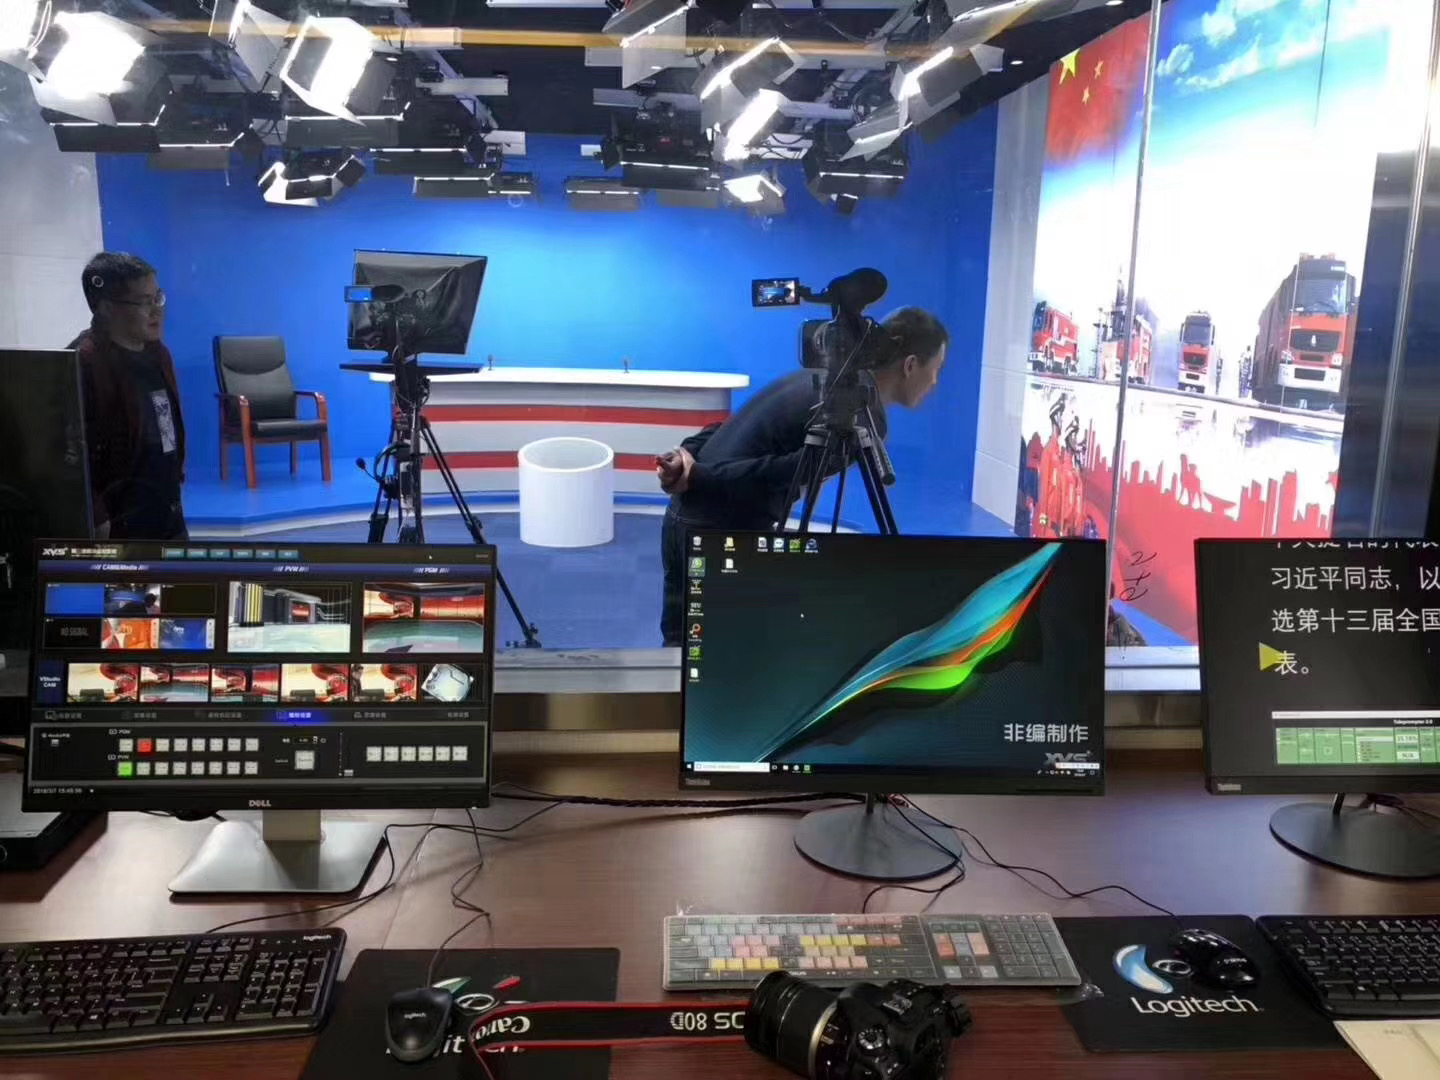 广播电视大学演播室编辑室 虚拟演播室系统设备